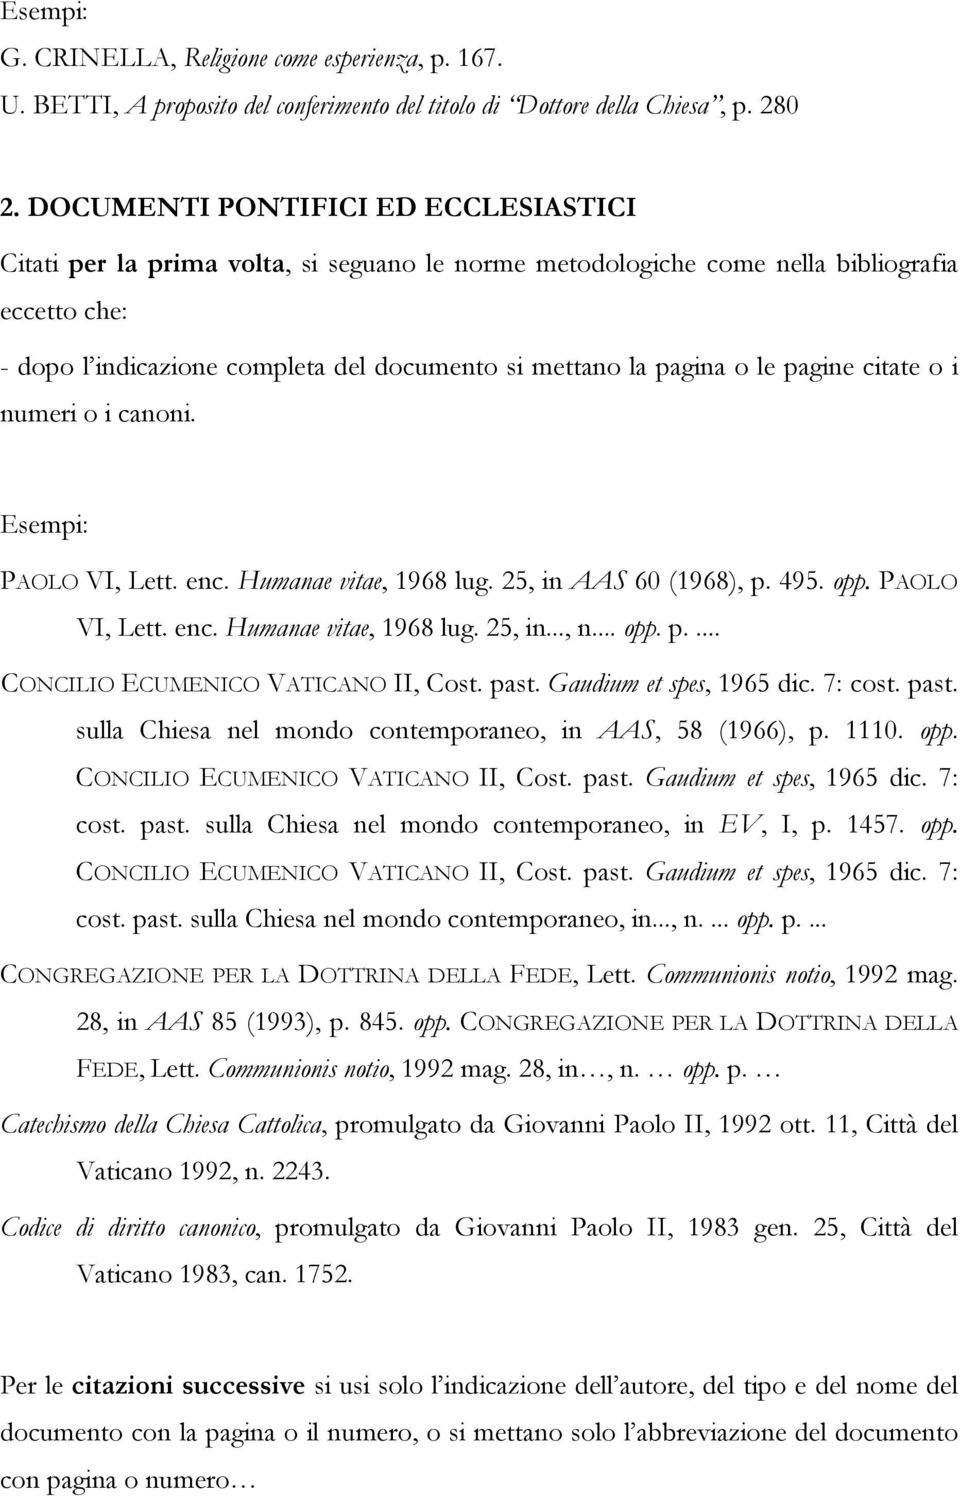 o le pagine citate o i numeri o i canoni. Esempi: PAOLO VI, Lett. enc. Humanae vitae, 1968 lug. 25, in AAS 60 (1968), p. 495. opp. PAOLO VI, Lett. enc. Humanae vitae, 1968 lug. 25, in..., n... opp. p.... CONCILIO ECUMENICO VATICANO II, Cost.